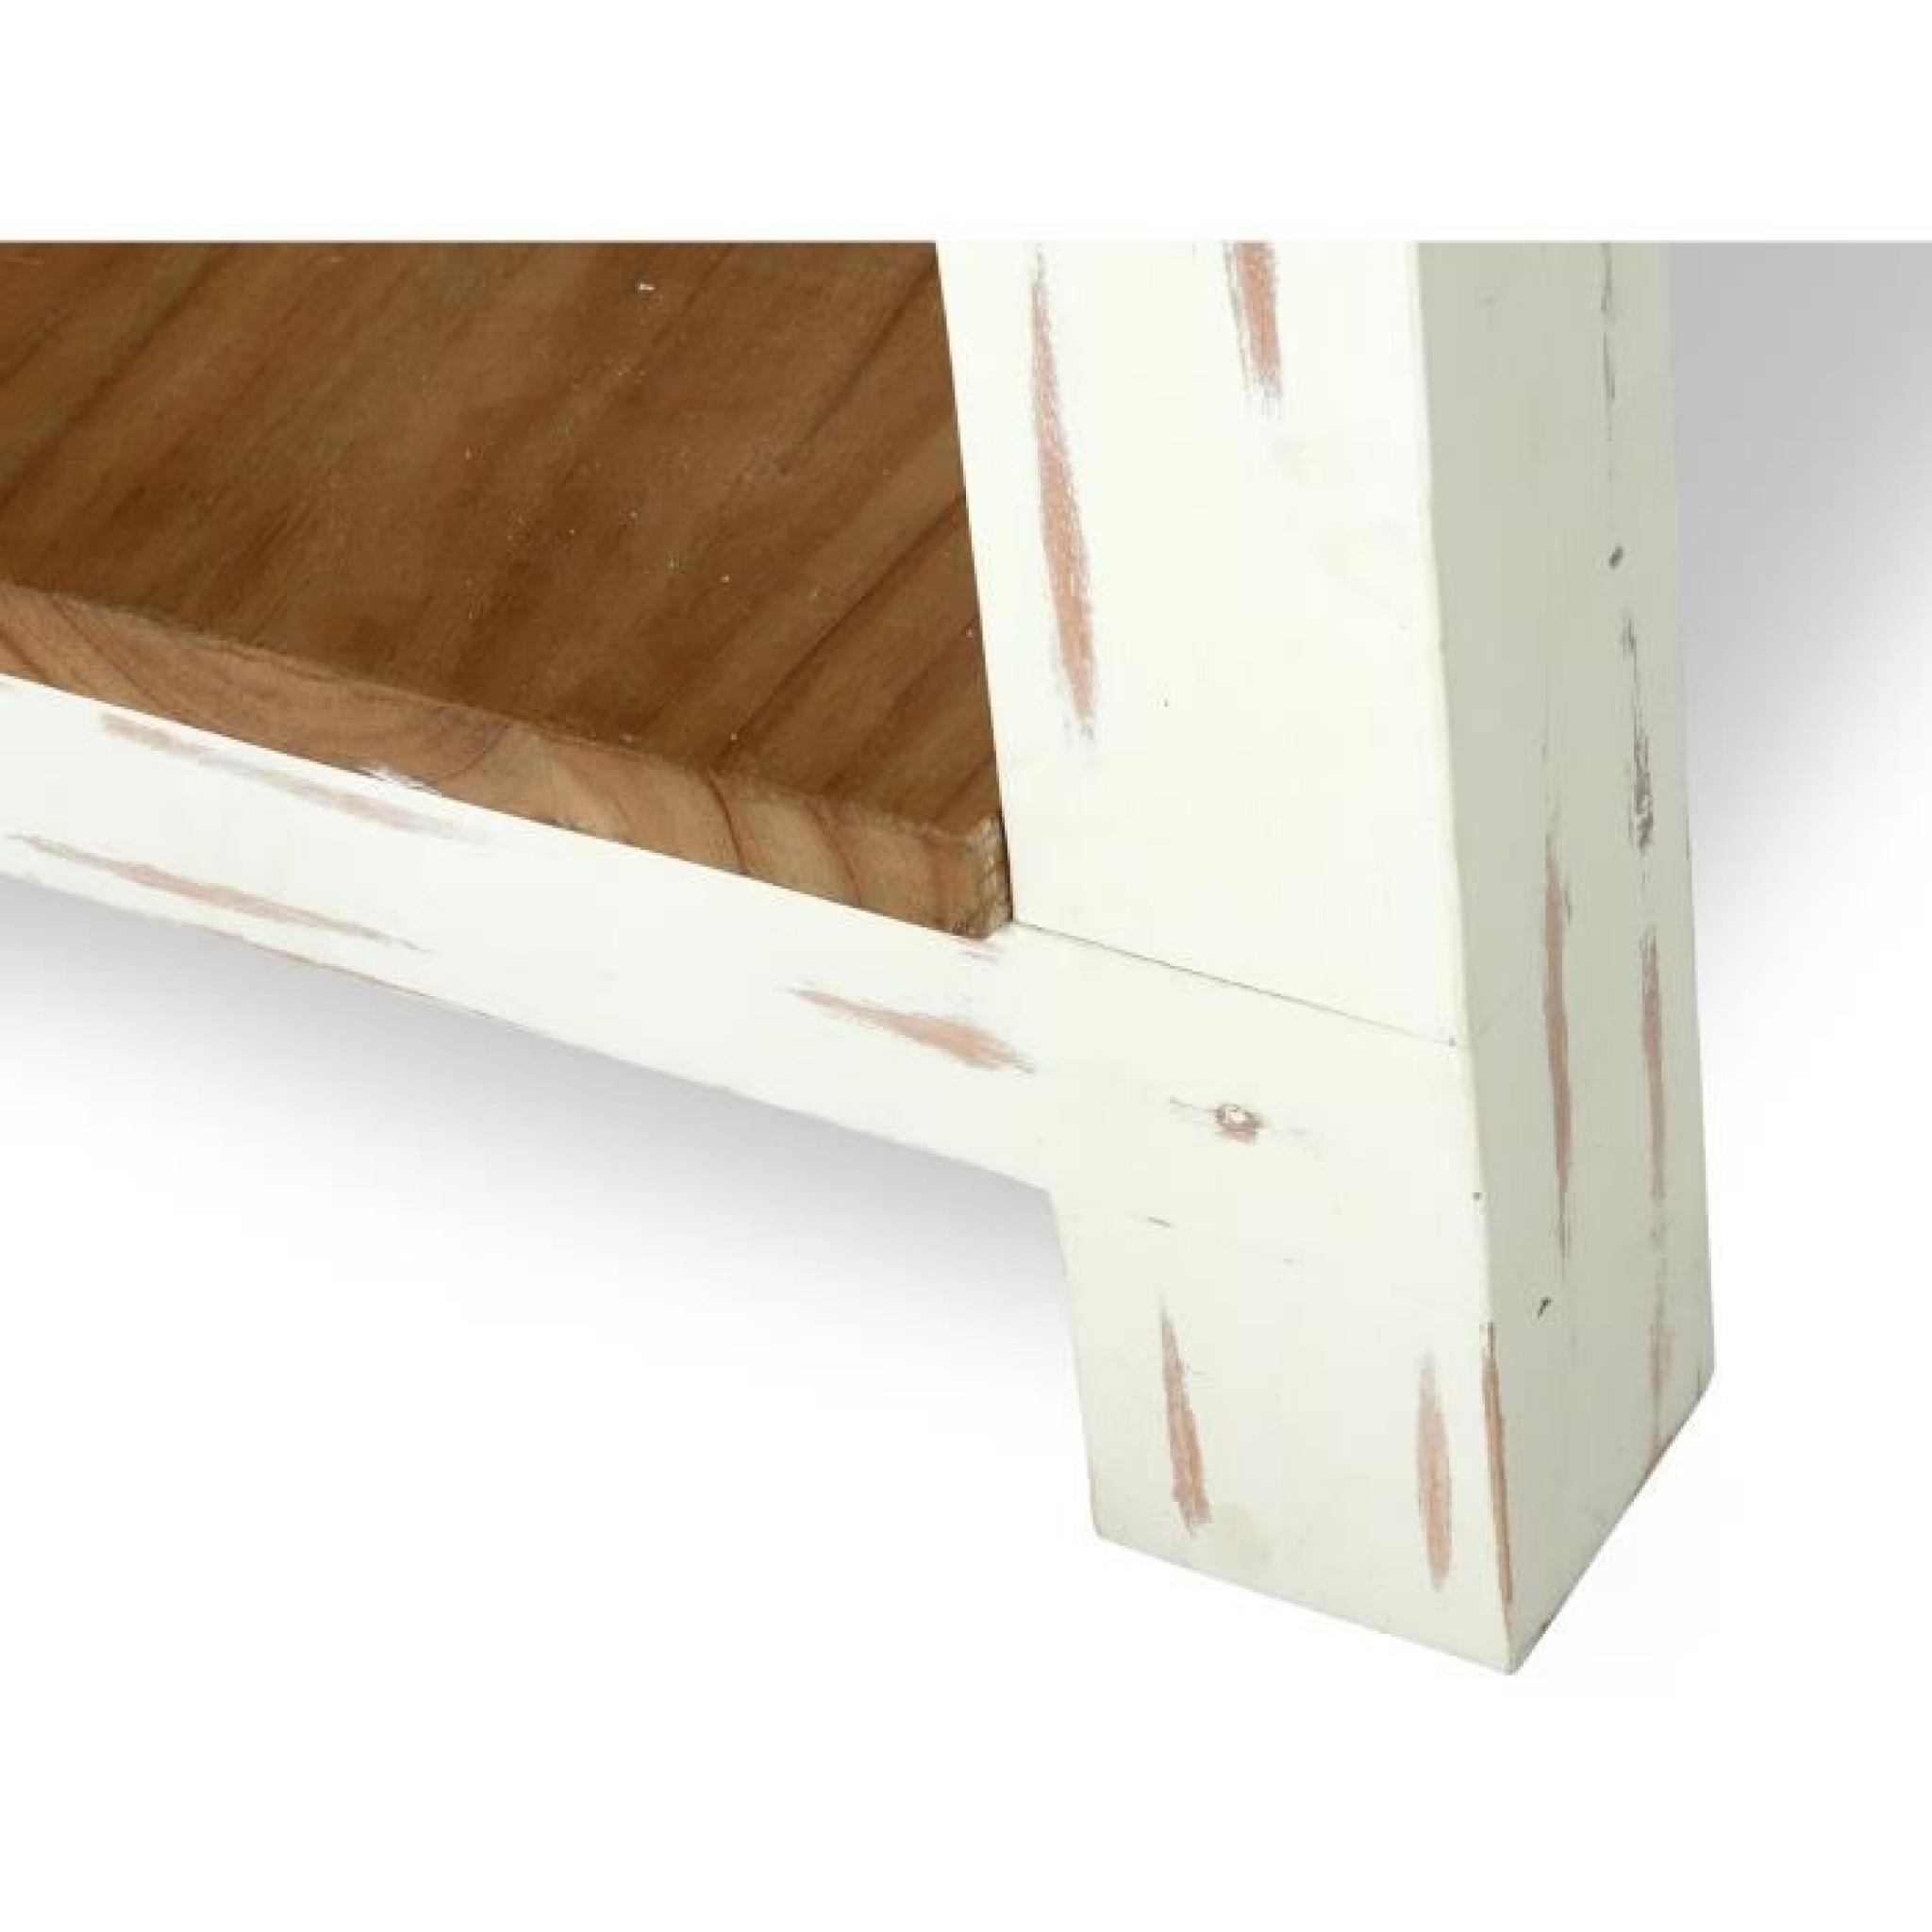 Table de bar LANDHAUS 150x80 en bois Mindi laqué blanc et miel pas cher